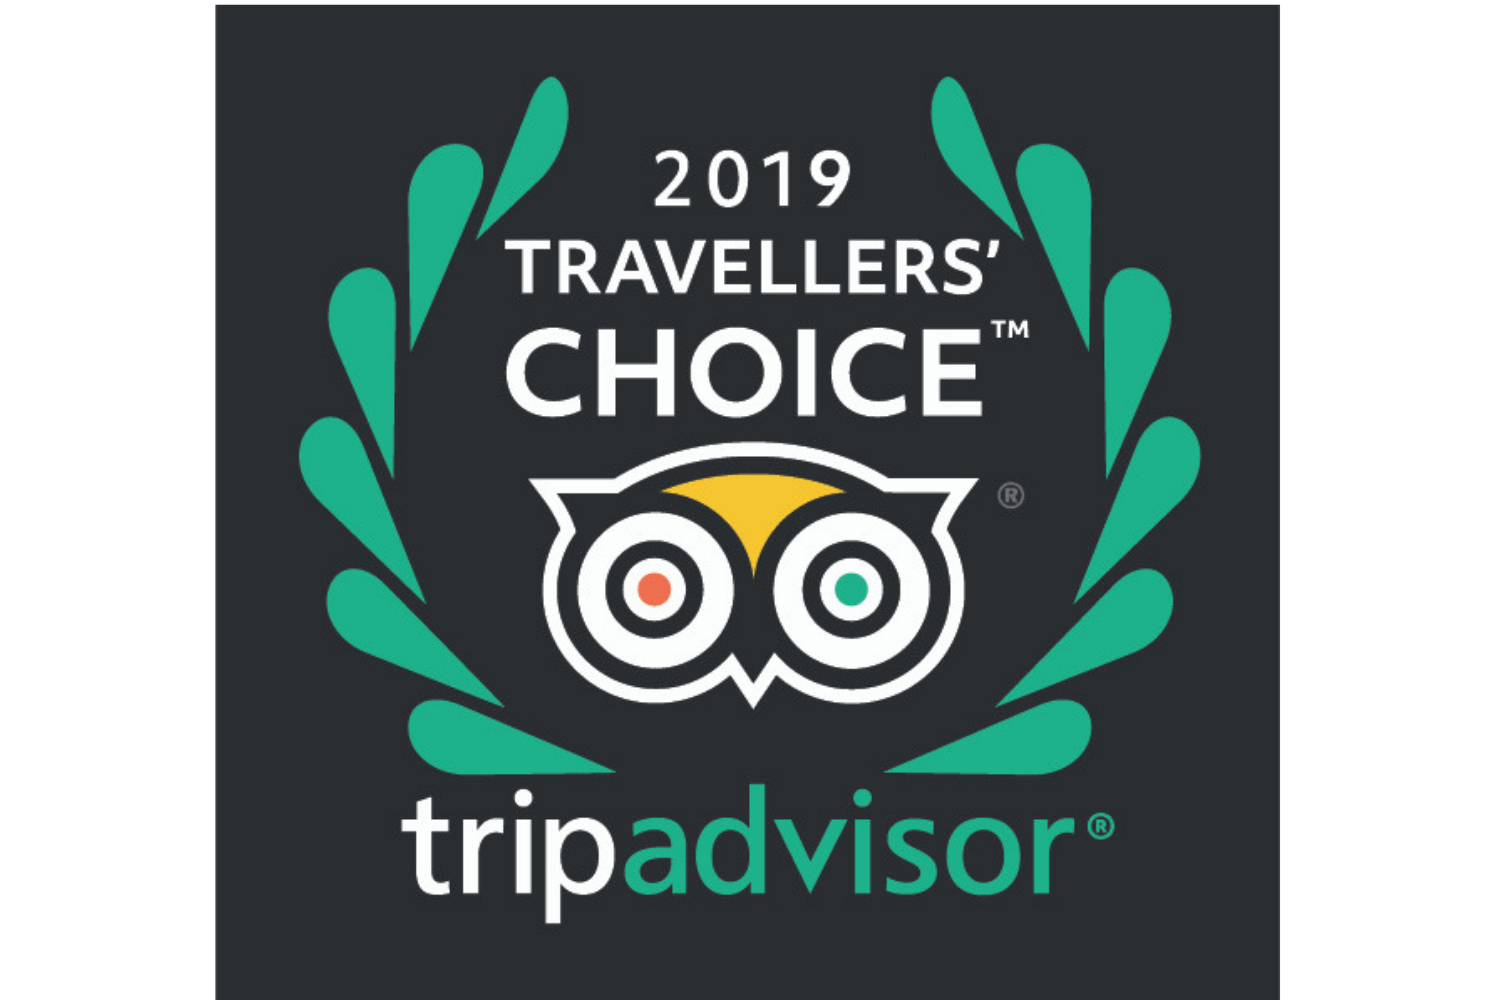 Travel choice. Travellers choice TRIPADVISOR 2020. TRIPADVISOR choice. Награда travellers' choice. TRIPADVISOR travellers choice 2021.